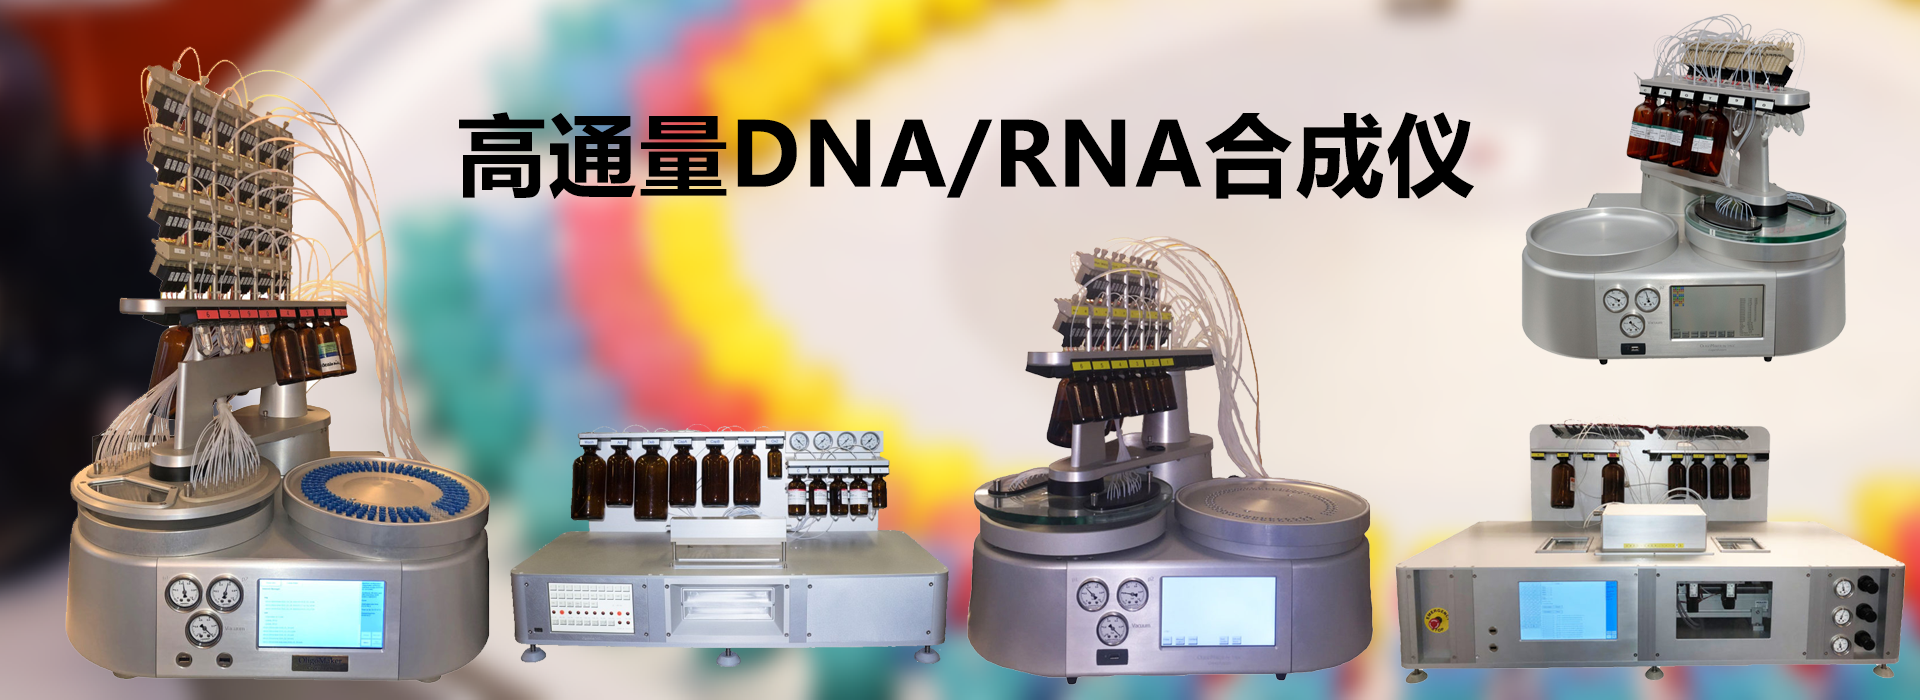 高通量DNA/RNA合成仪